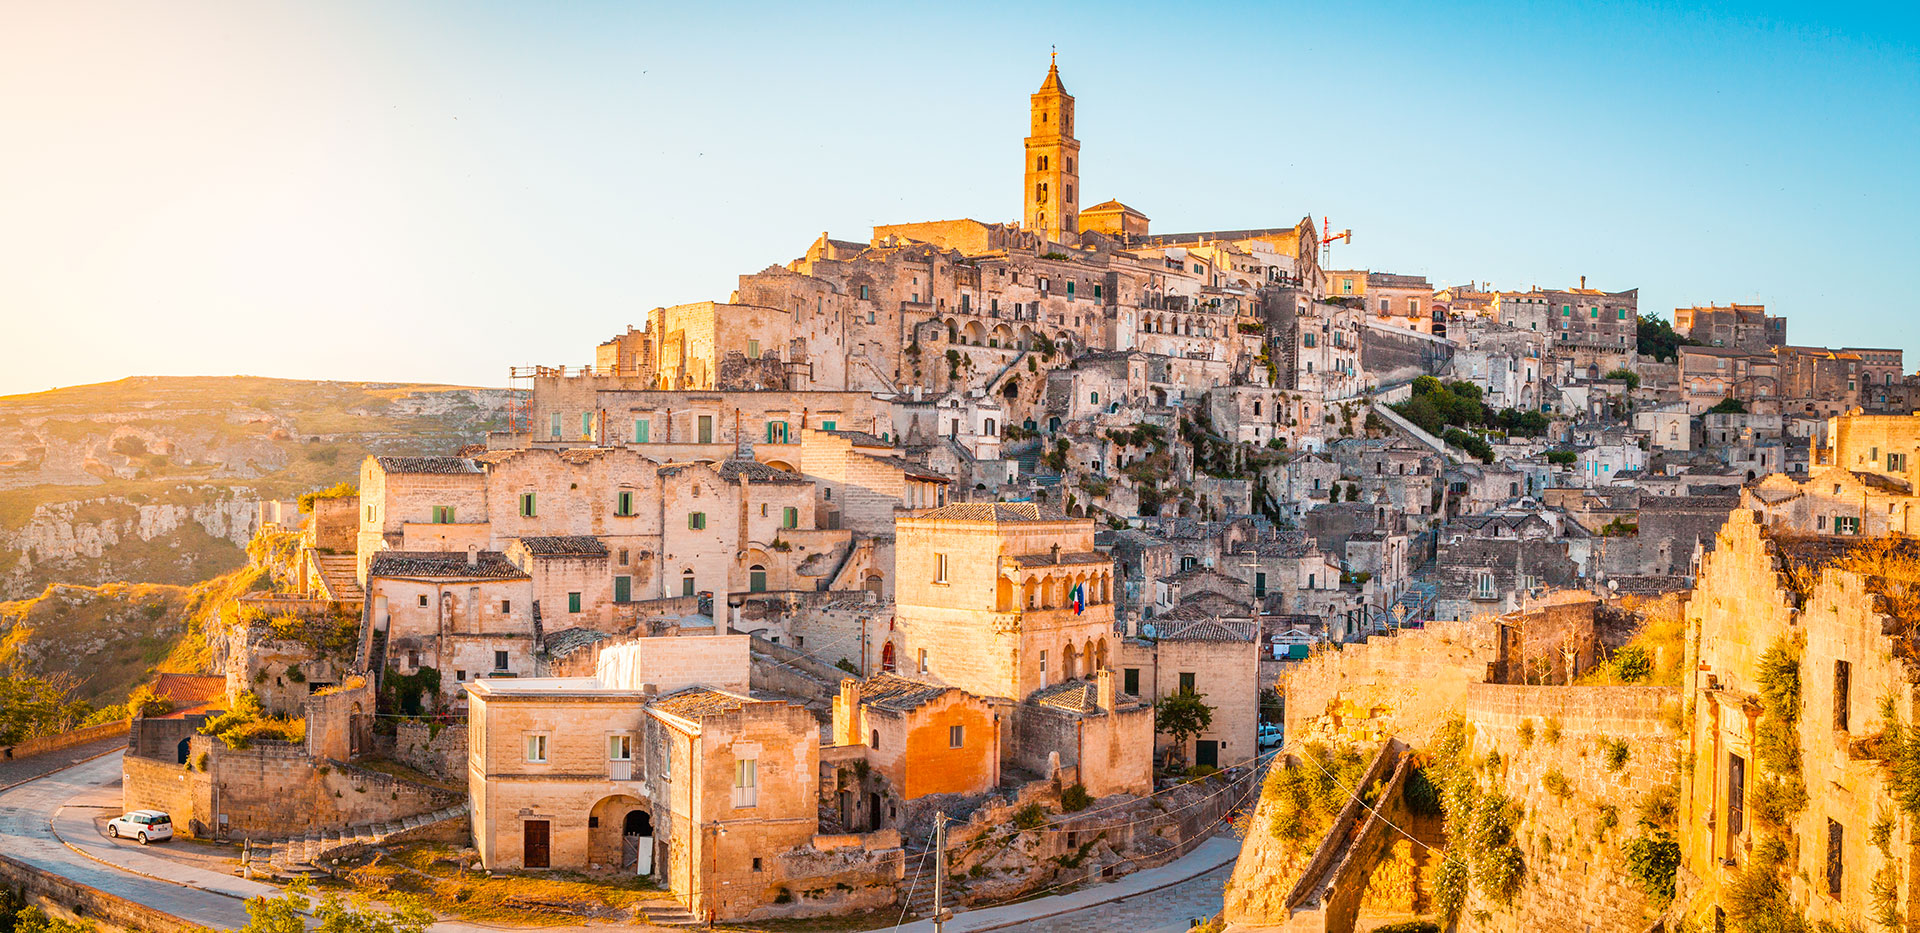 Cosa vedere a Matera, la Capitale della Cultura 2019 | Allianz Global Assistance